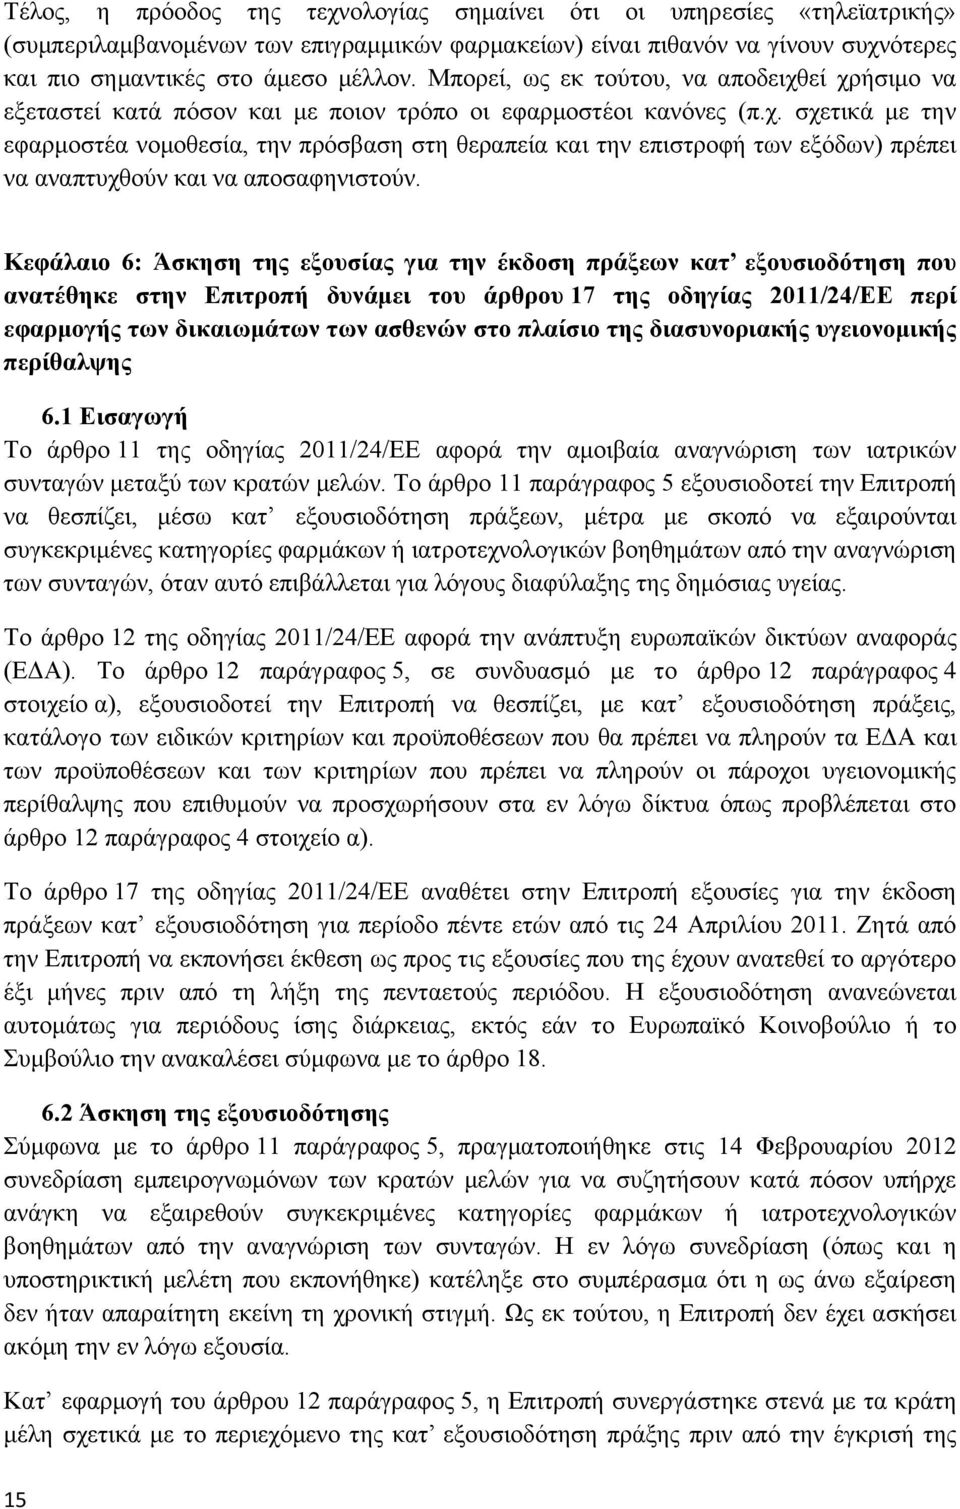 Κεφάλαιο 6: Άσκηση της εξουσίας για την έκδοση πράξεων κατ εξουσιοδότηση που ανατέθηκε στην Επιτροπή δυνάμει του άρθρου 17 της οδηγίας 2011/24/ΕΕ περί εφαρμογής των δικαιωμάτων των ασθενών στο